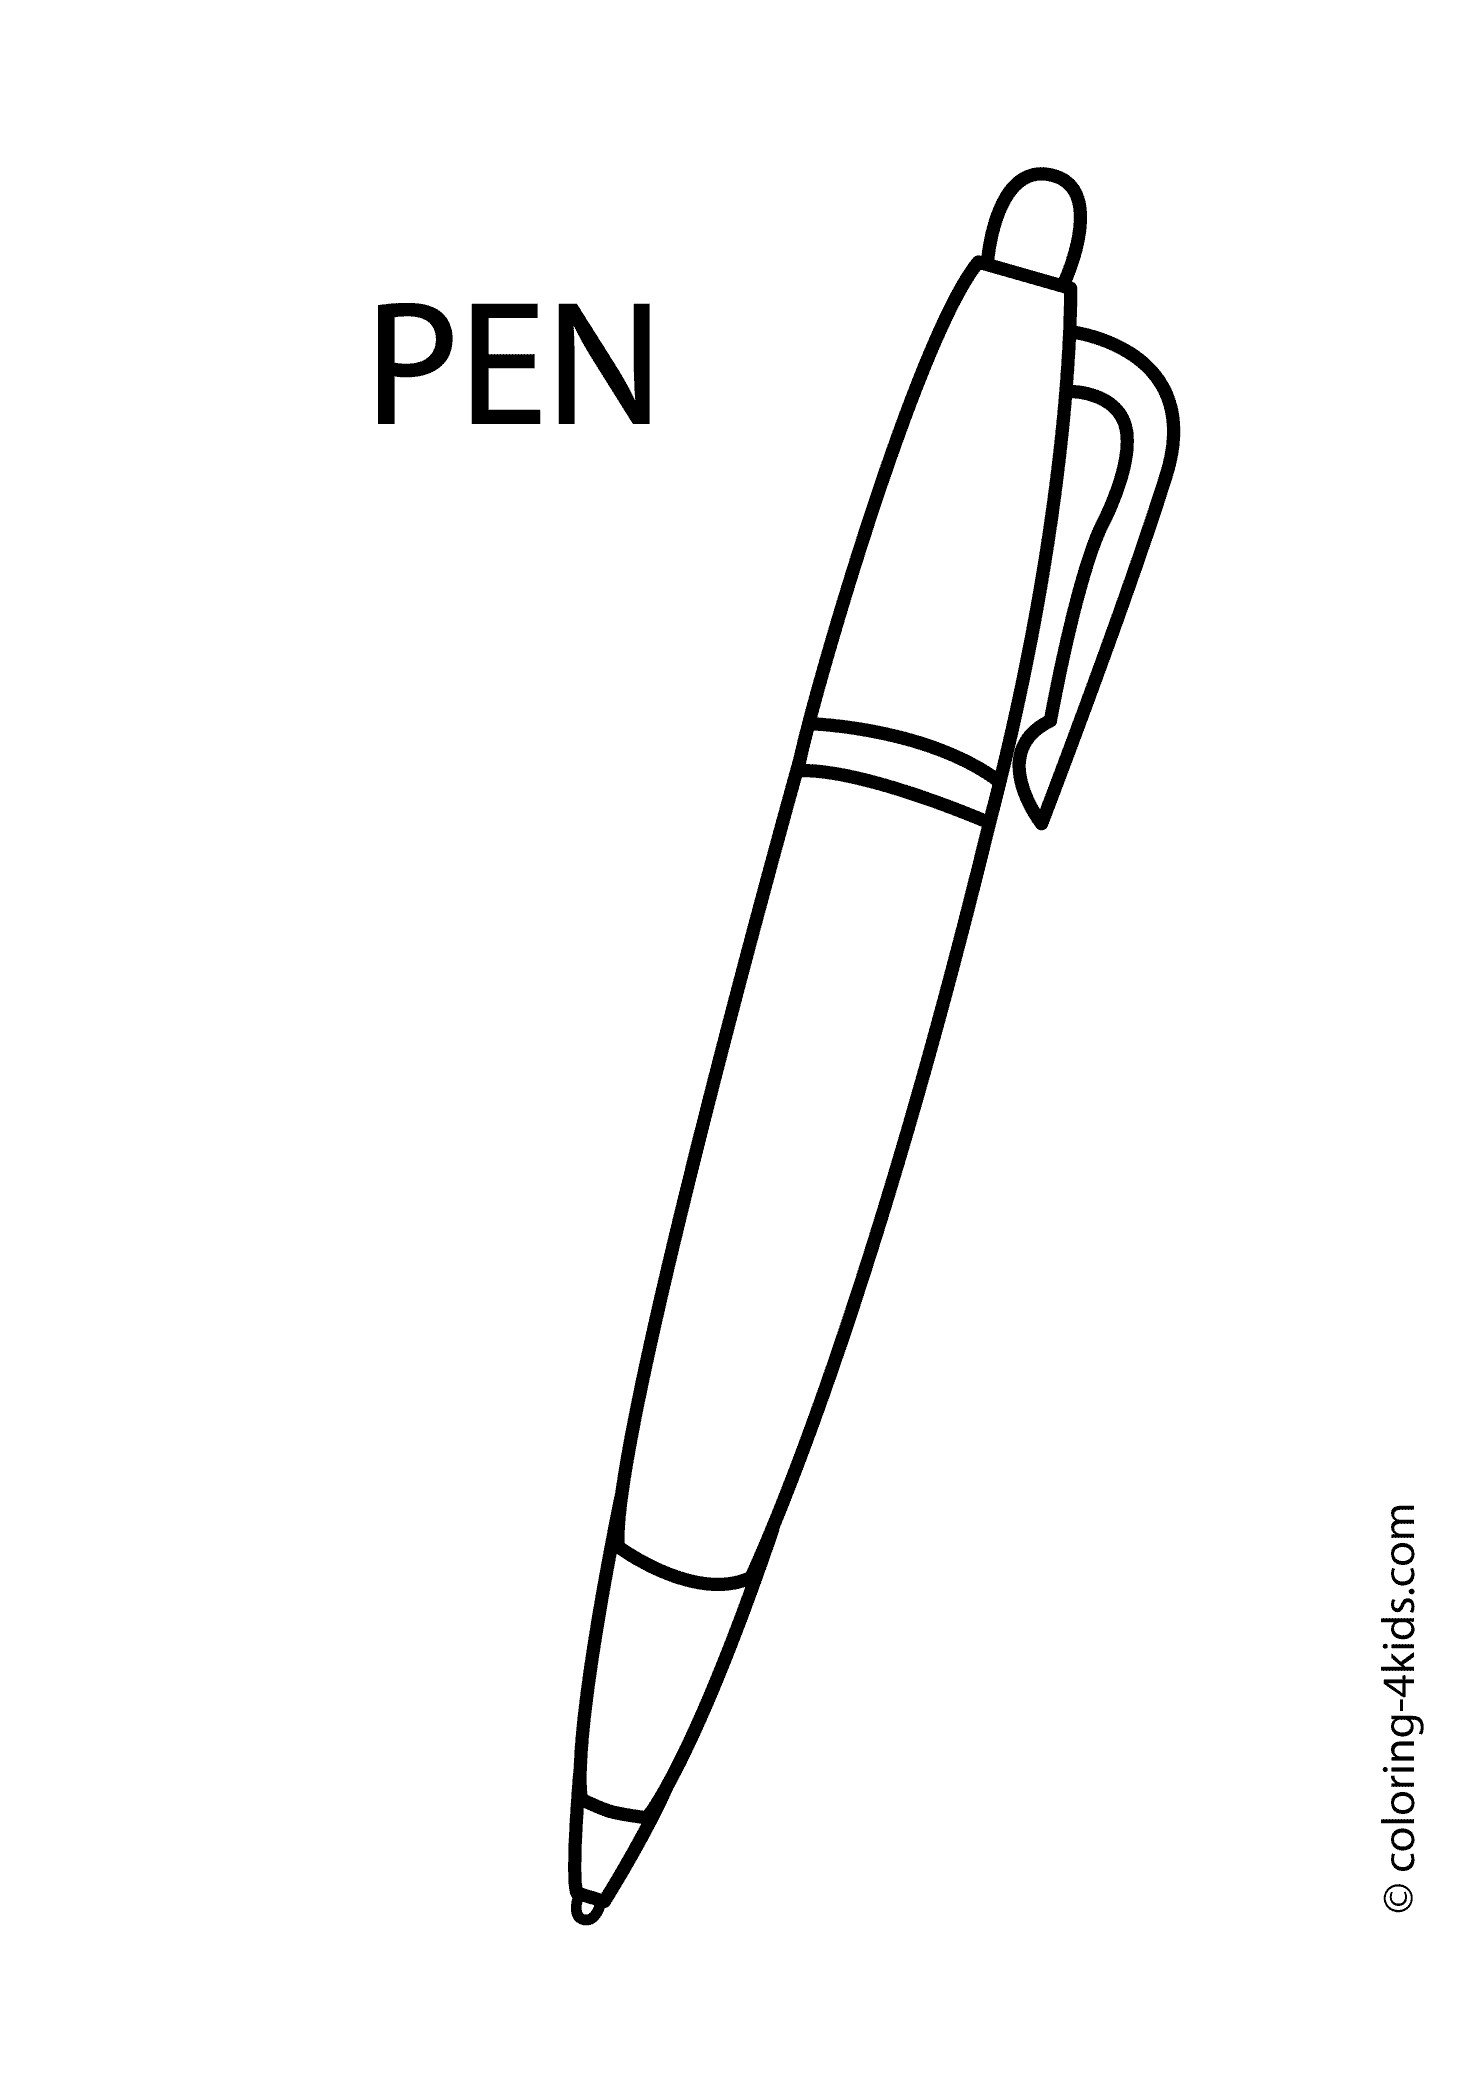 Pen по английски. Ручка для раскрашивания. Ручка раскраска. Авторучка раскраска для детей. Раскраска ручка шариковая.